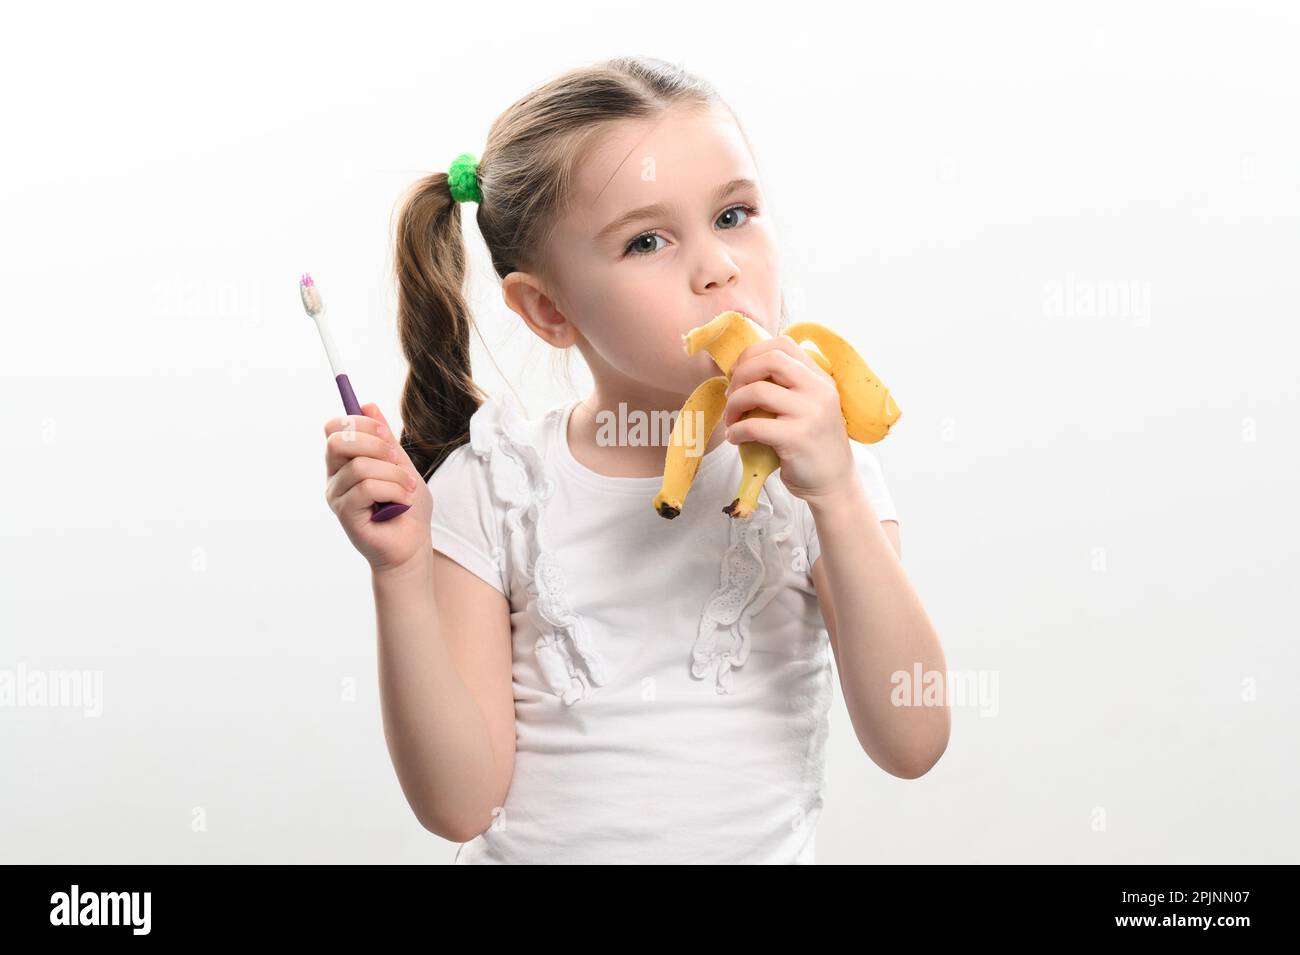 Ein kleines Mädchen isst eine Banane und hält eine Zahnbürste in der Hand, Studiofoto auf weißem Hintergrund, eine Banane hilft gegen Karies, eine Idee für Zahnärzte Stockfoto